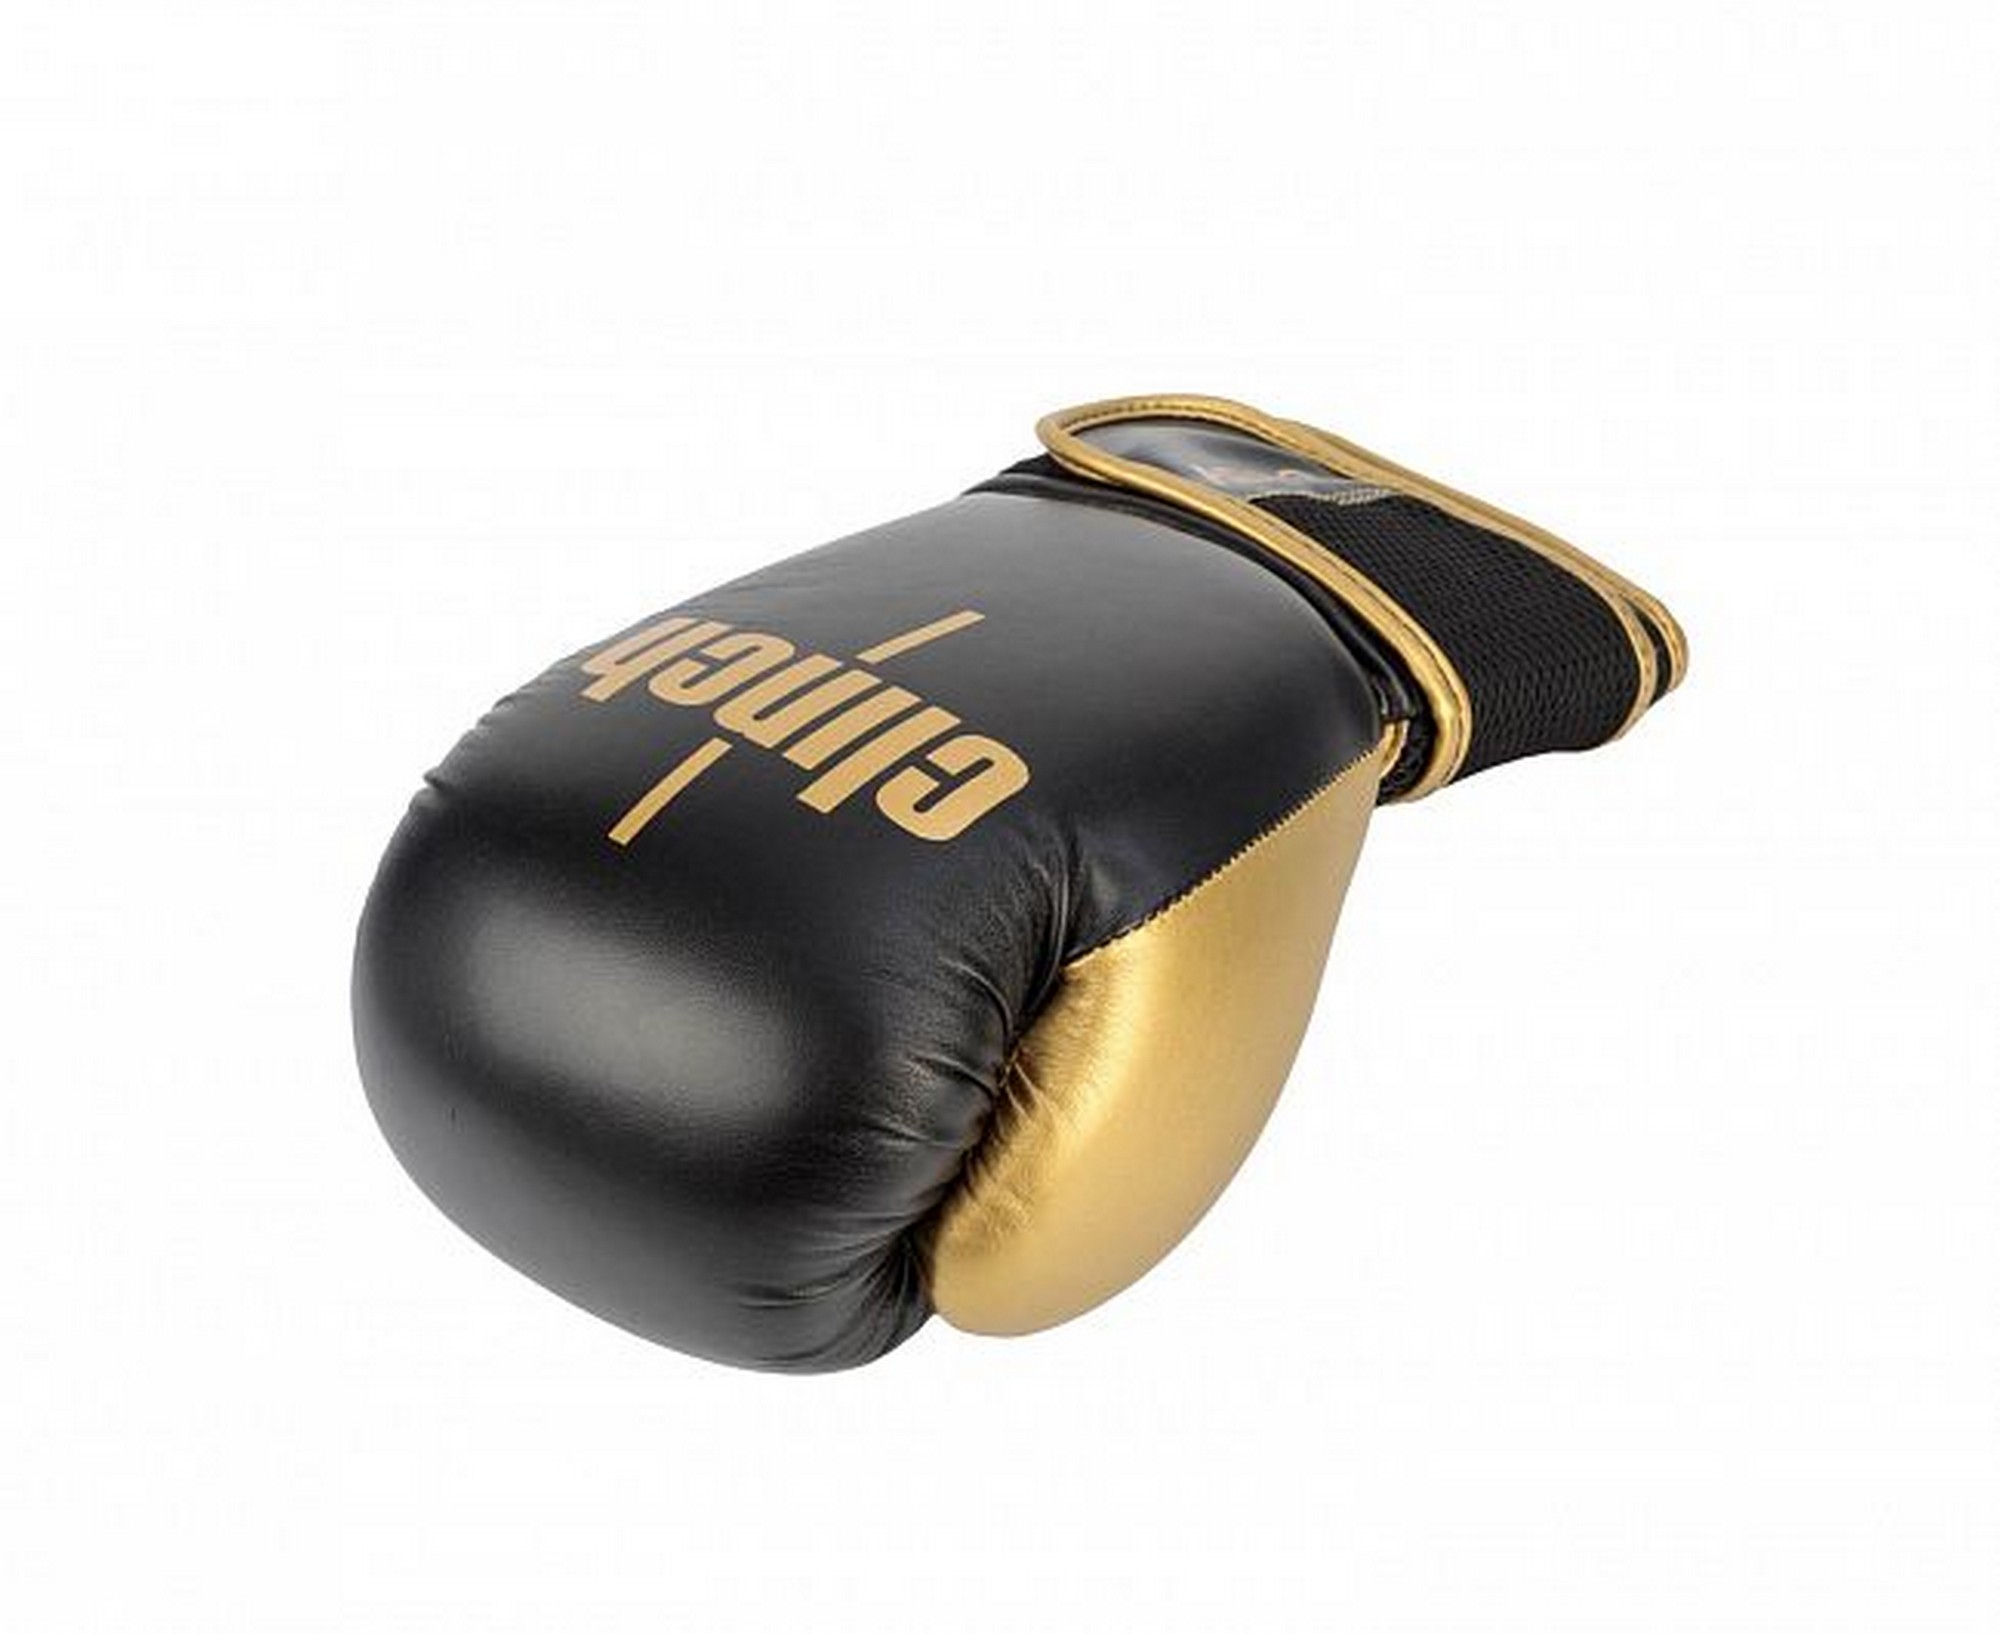 Перчатки боксерские Clinch Aero 2.0 C136 черно-золотой 2000_1634